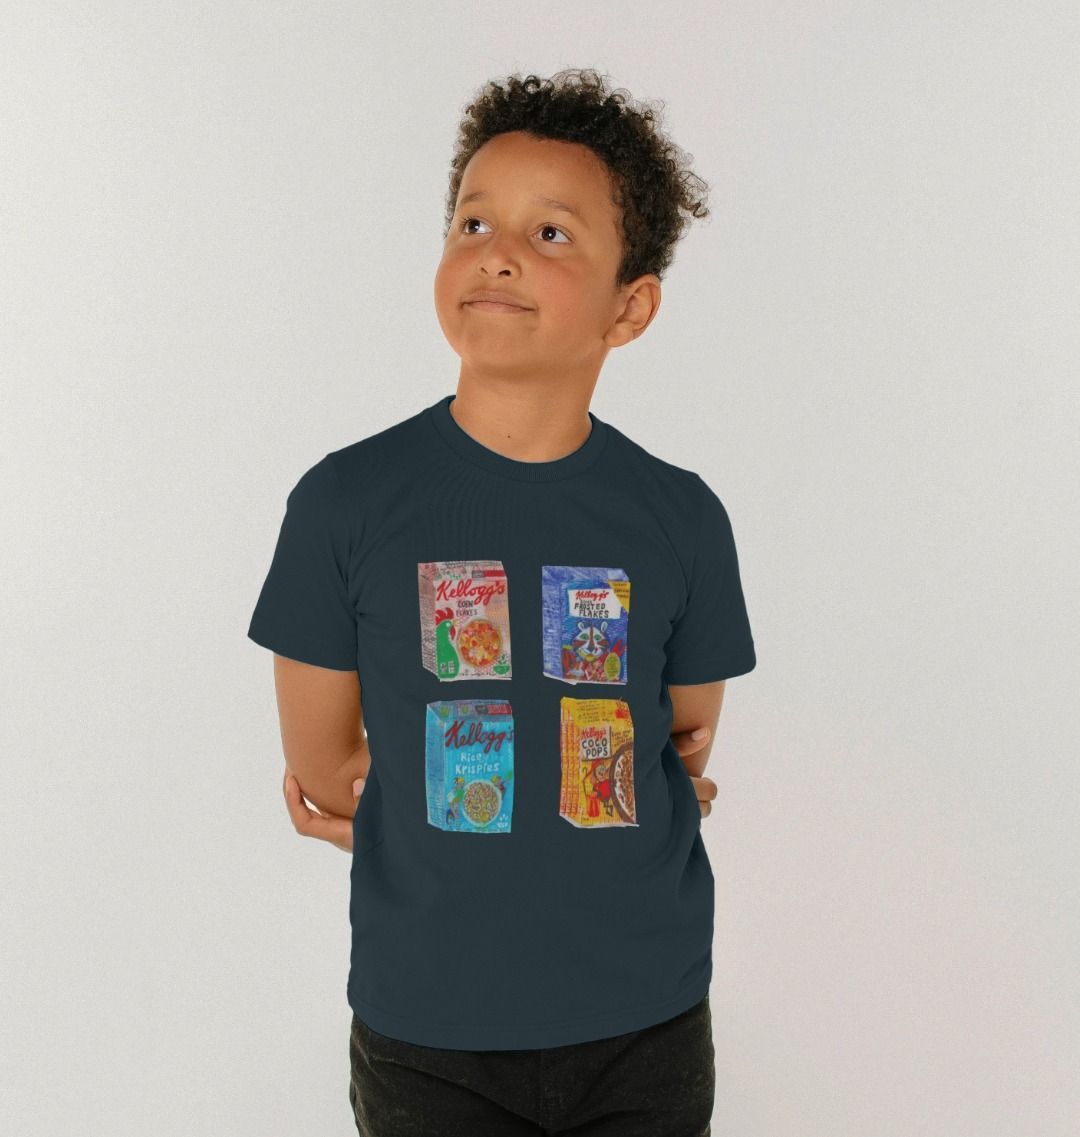 breakfast buddies organic kid's tee - Printed Kids T-Shirt - Sarah Millin